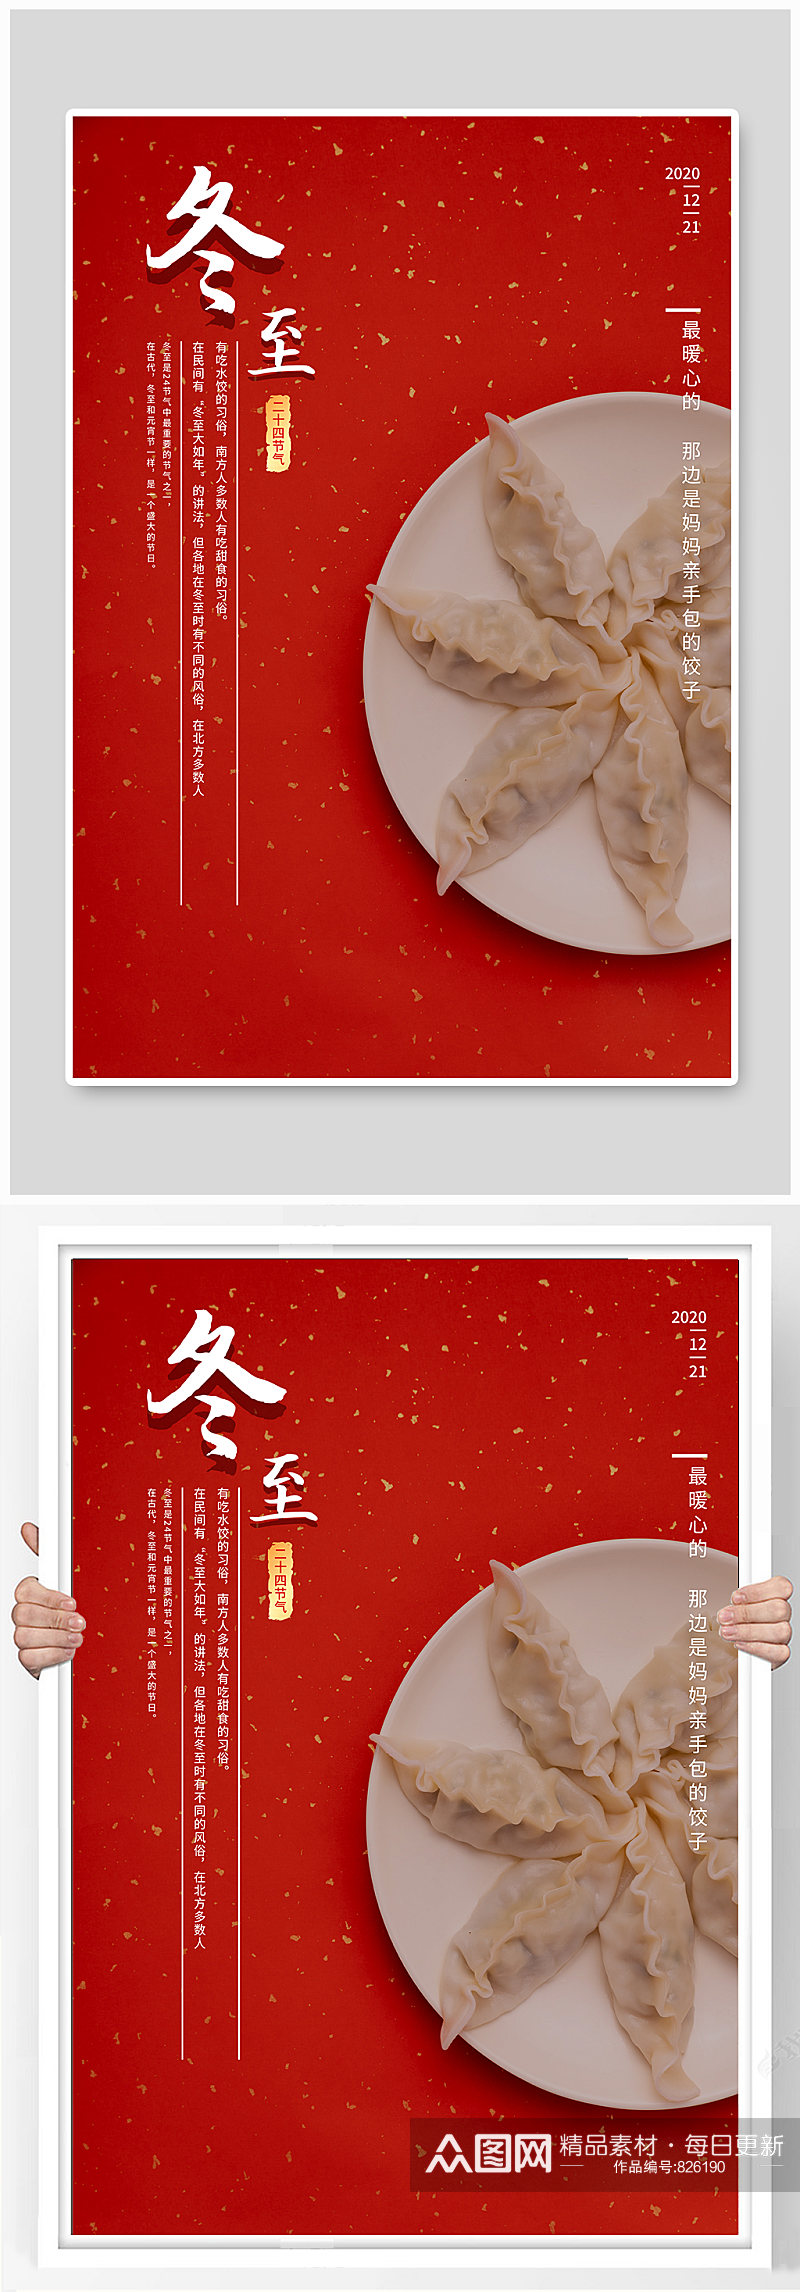 冬至饺子平面创意海报素材